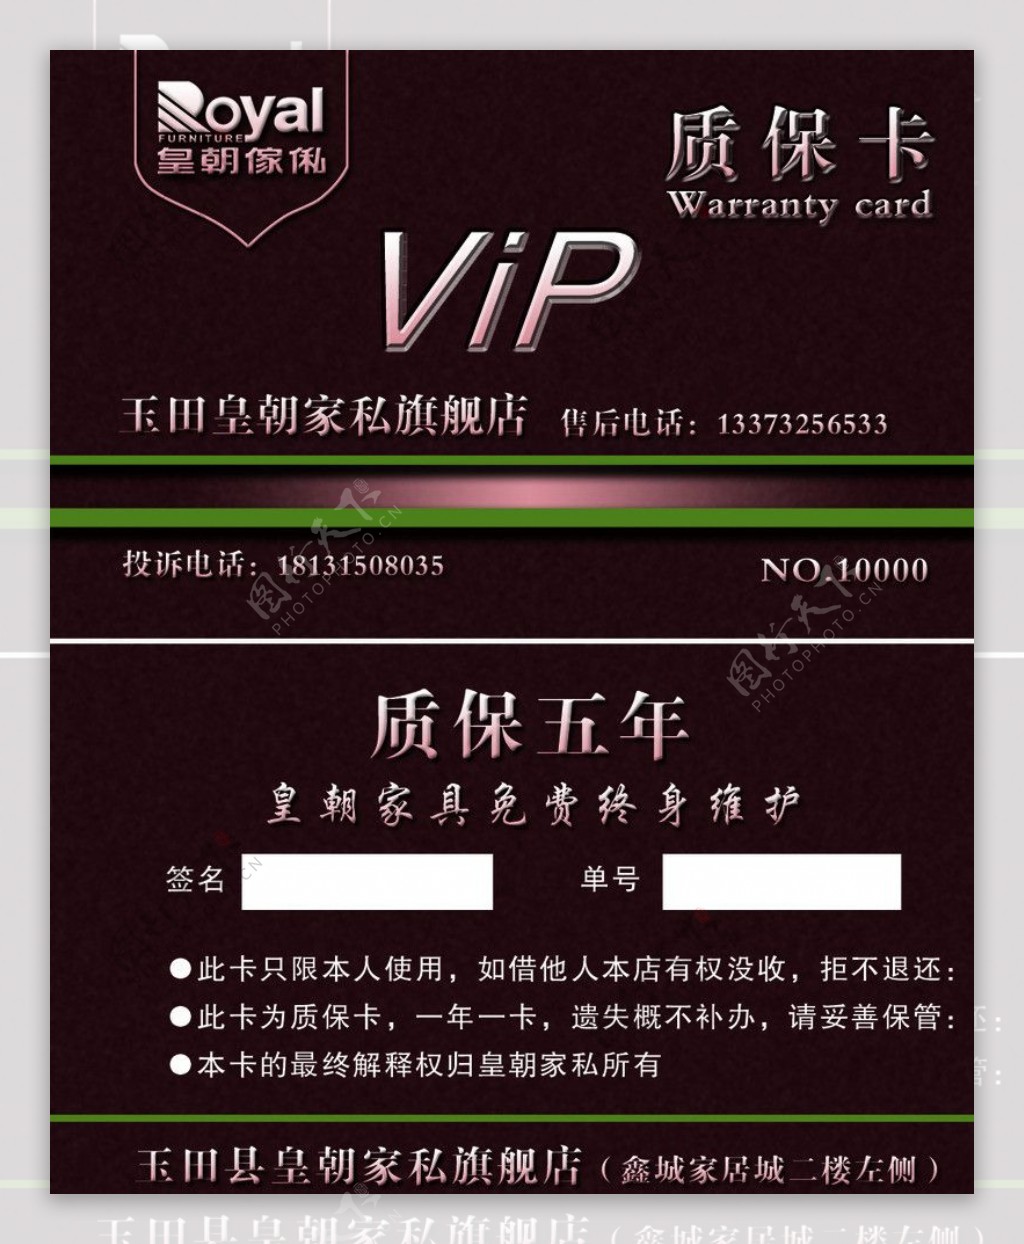 皇朝家私VIP质保卡图片